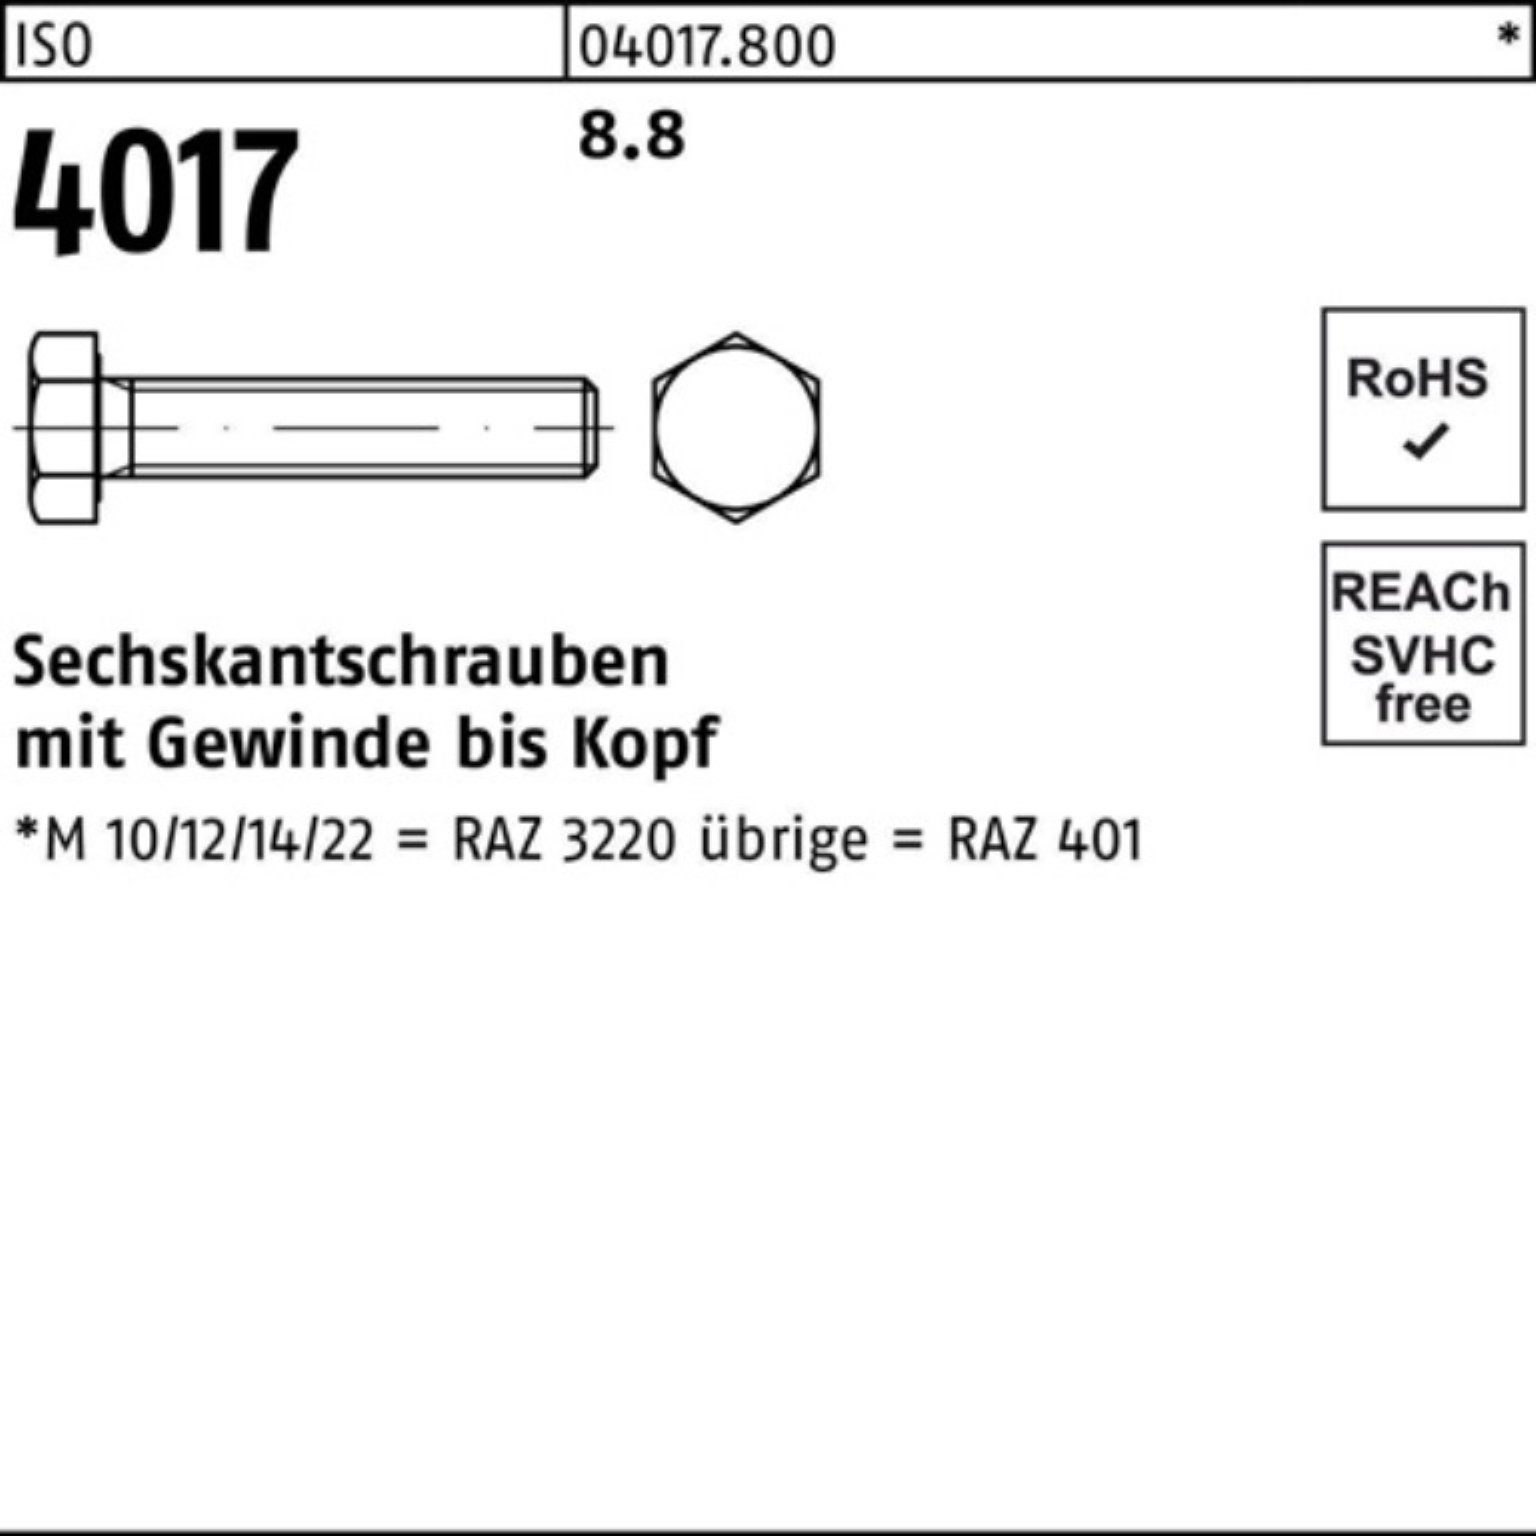 Bufab Sechskantschraube 500er VG ISO 8.8 Stück Sechskantschraube 22 Pack 500 4017 401 ISO M5x